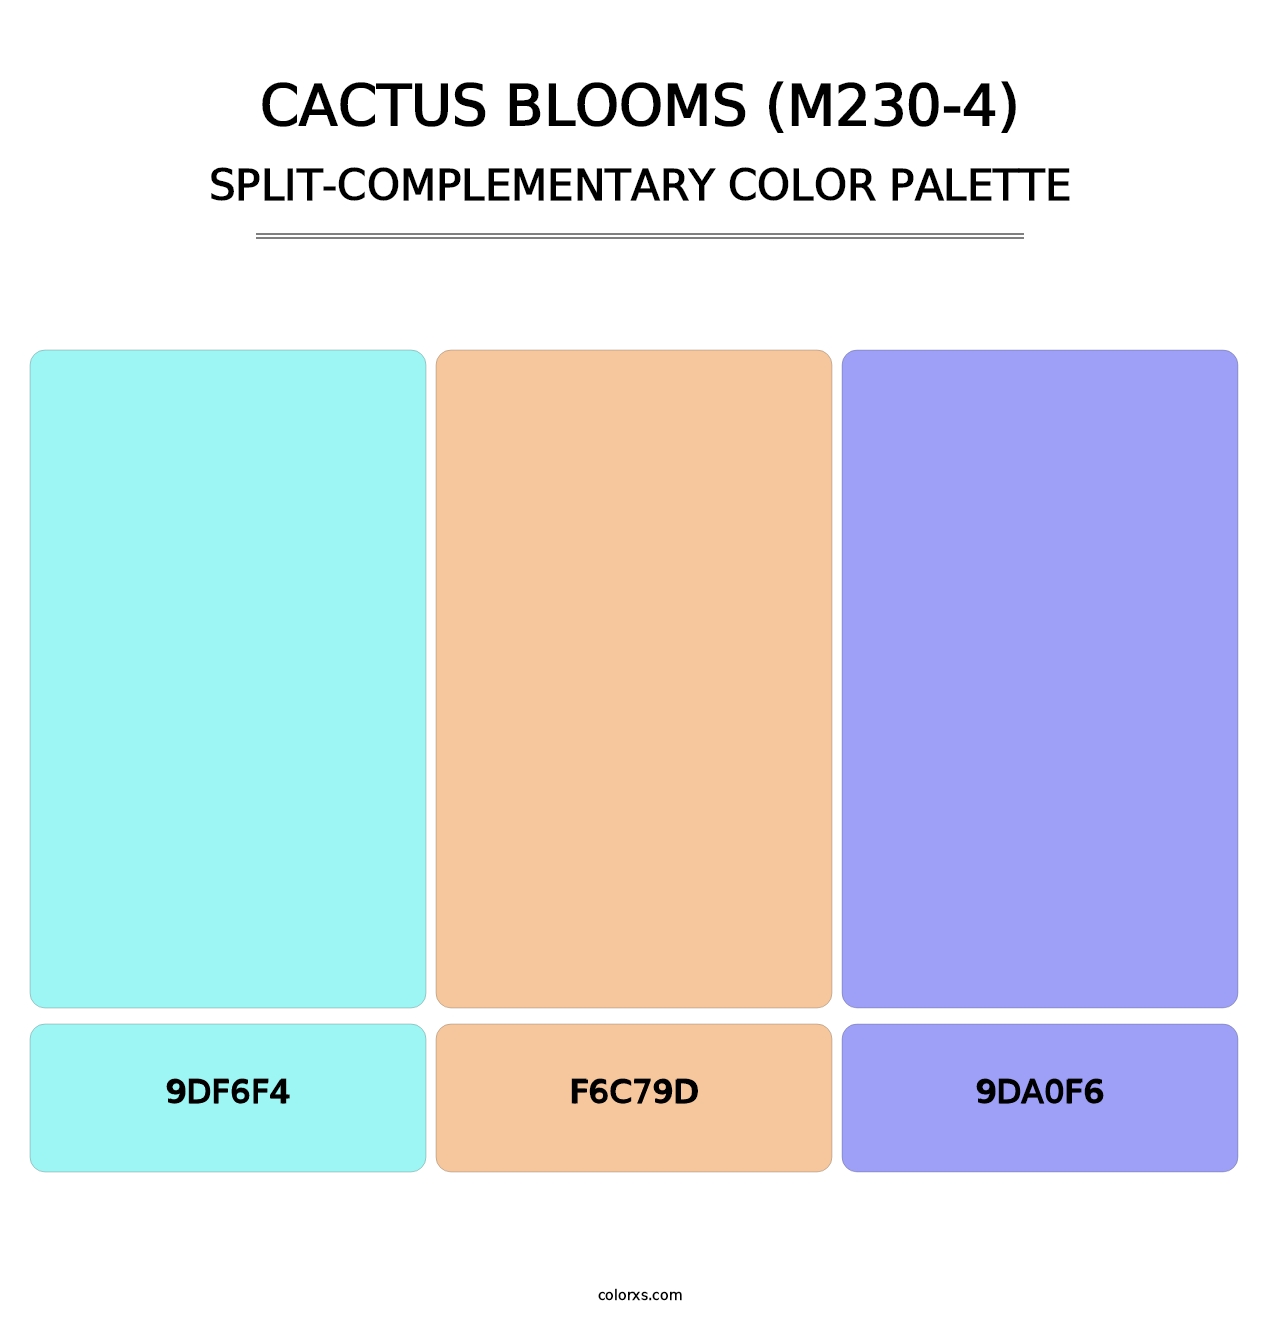 Cactus Blooms (M230-4) - Split-Complementary Color Palette